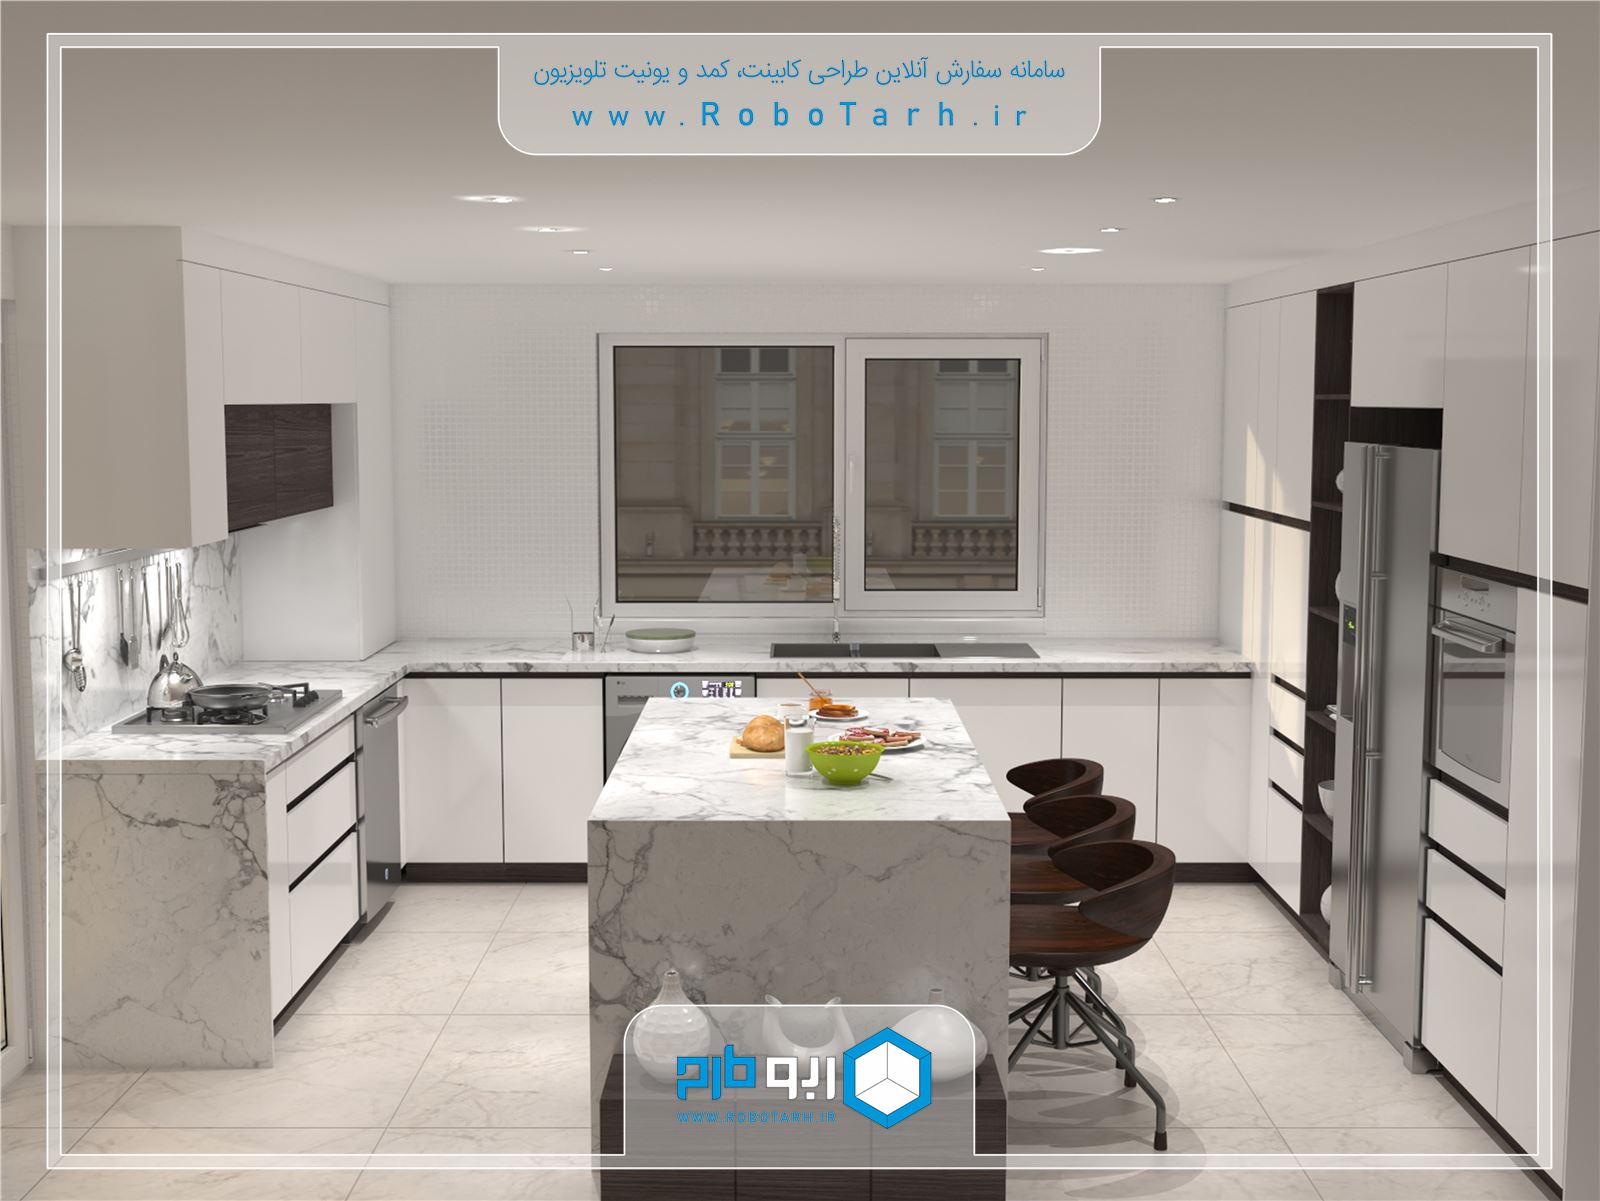 طراحی کابینت آشپزخانه جذاب و مدرن با ترکیب رنگ سفید براق و قهوه ای - ربوطرح